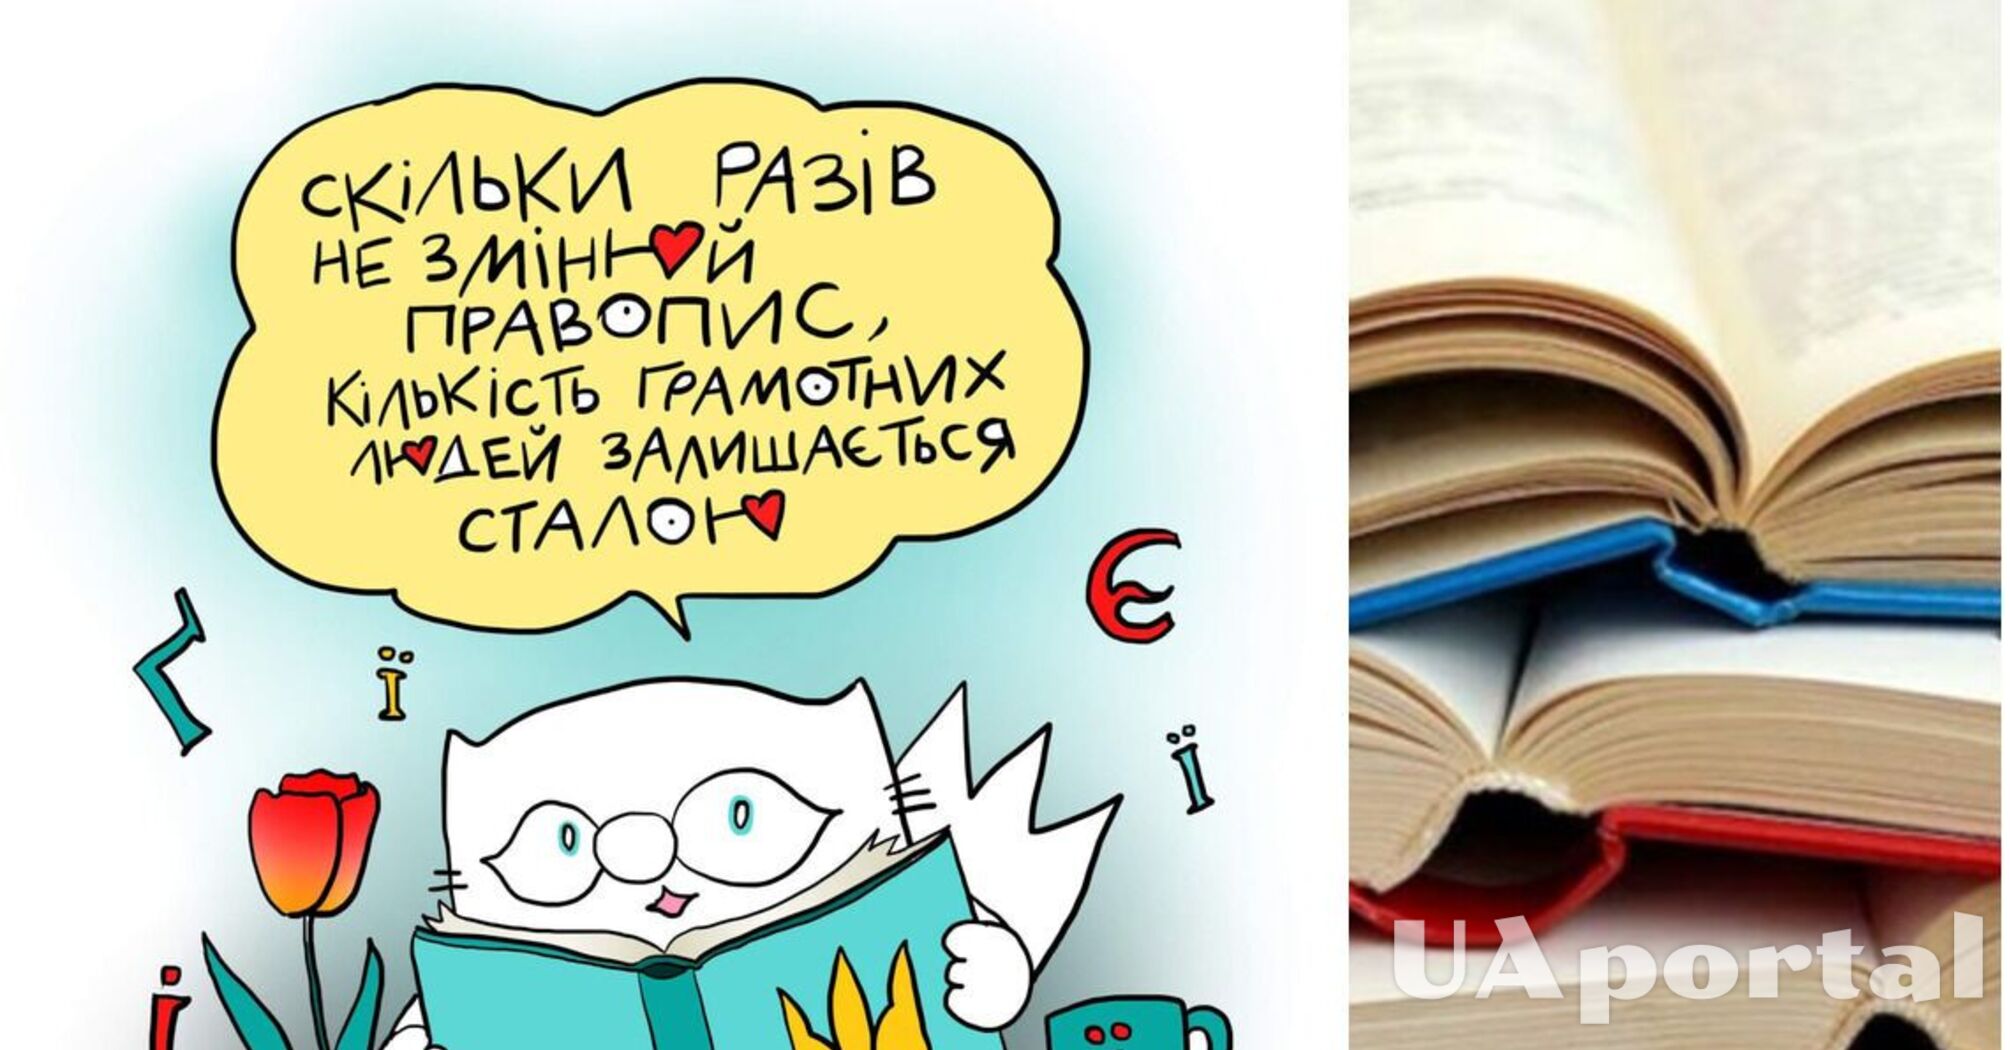 Как правильно писать слова по новому правописанию украинского языка